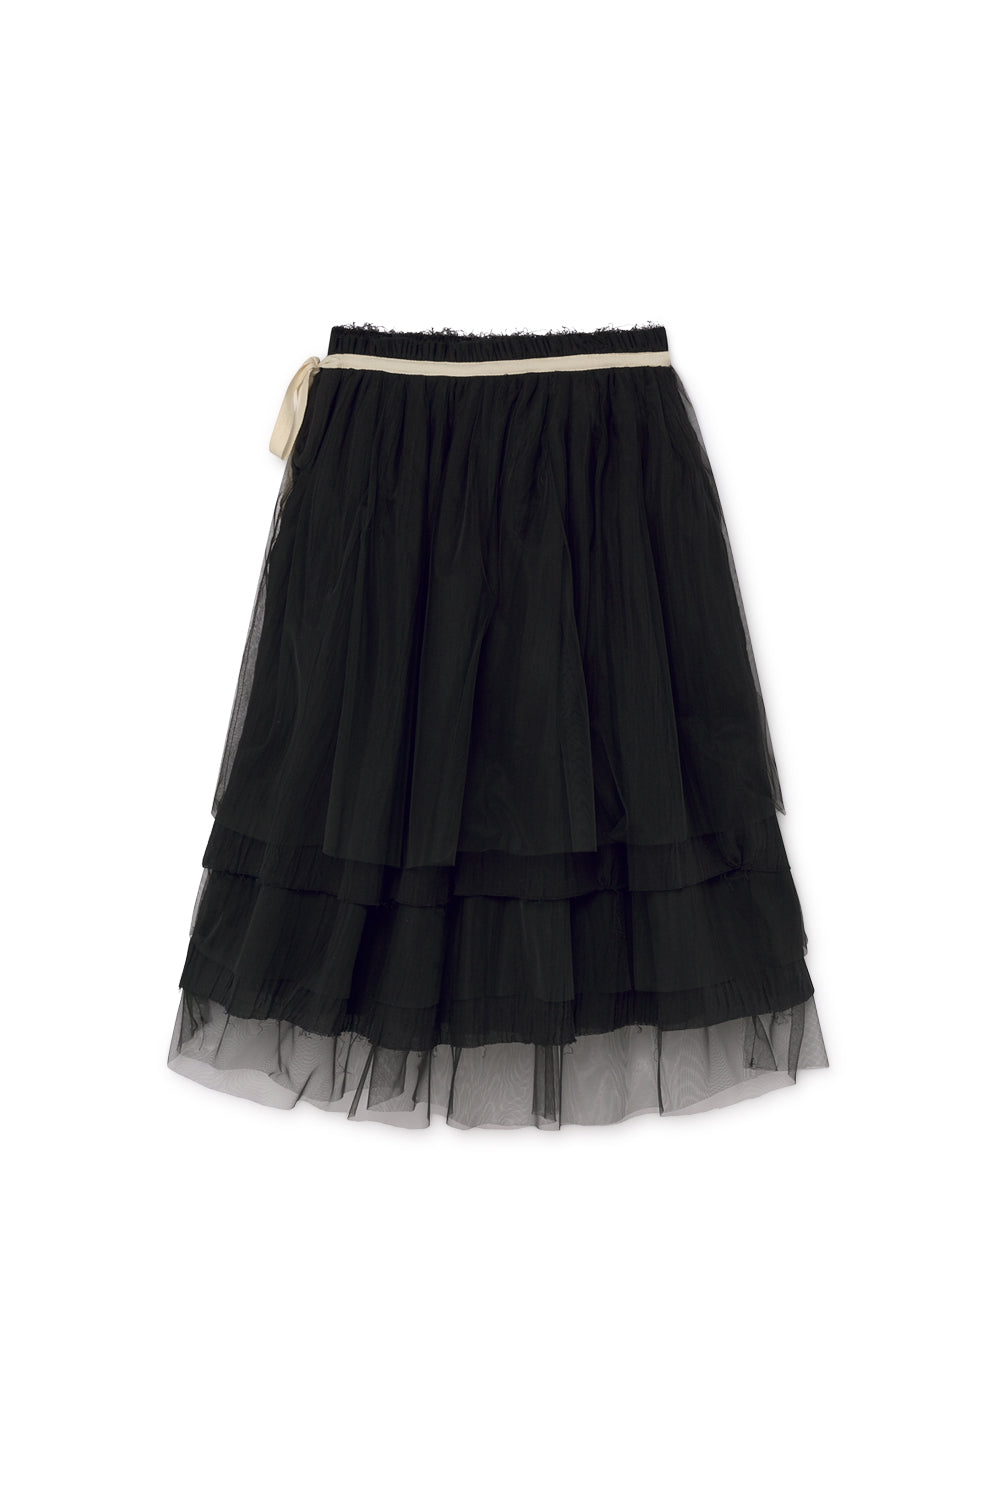 Little Creative Factory Muslin Fairy Layered Skirt - Black